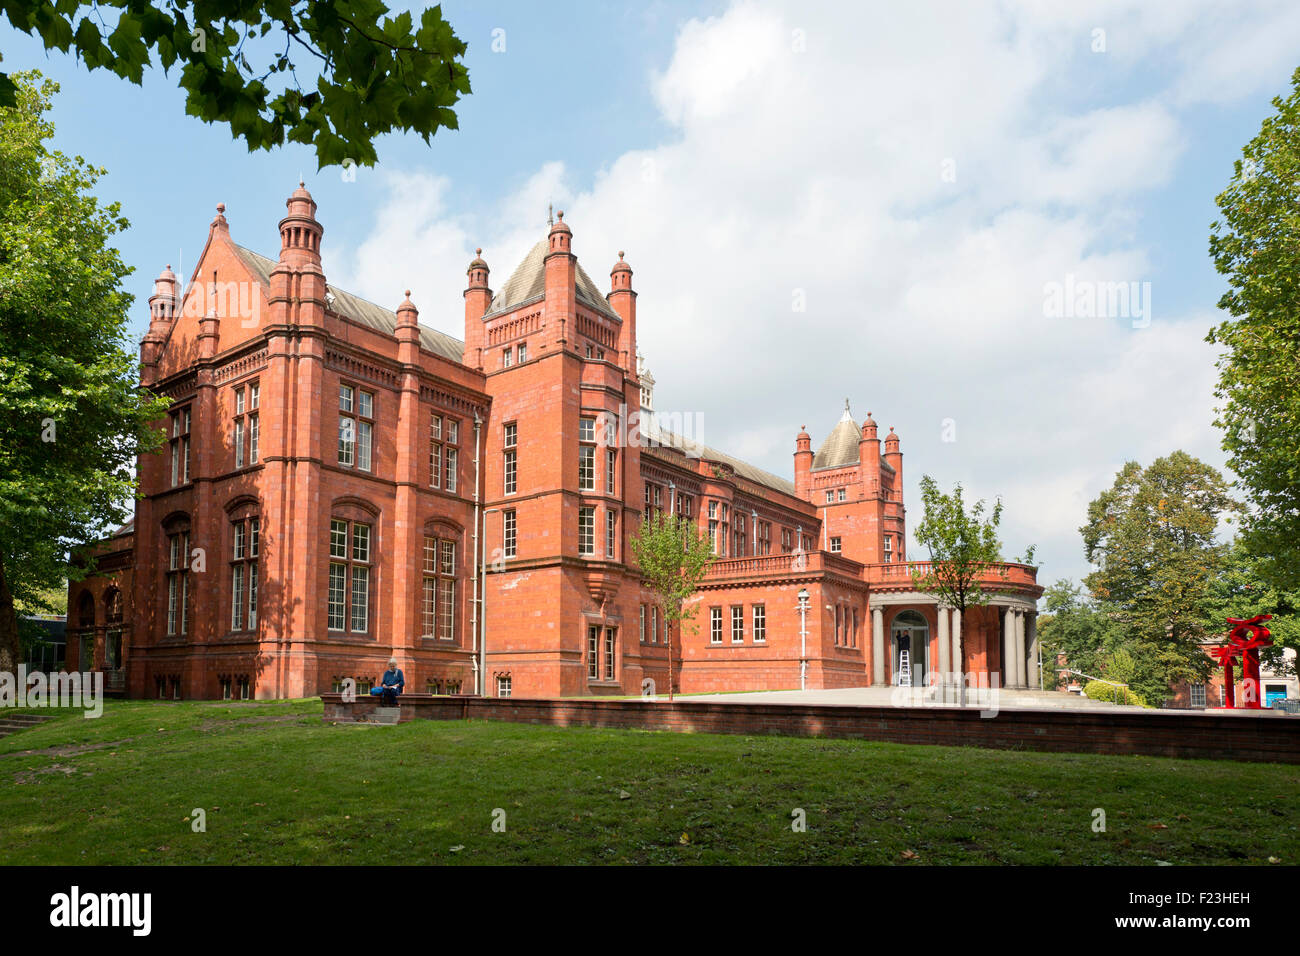 Récemment rénové, l'hôtel Whitworth Art Gallery situé sur la route d'Oxford campus de l'Université de Manchester. Banque D'Images